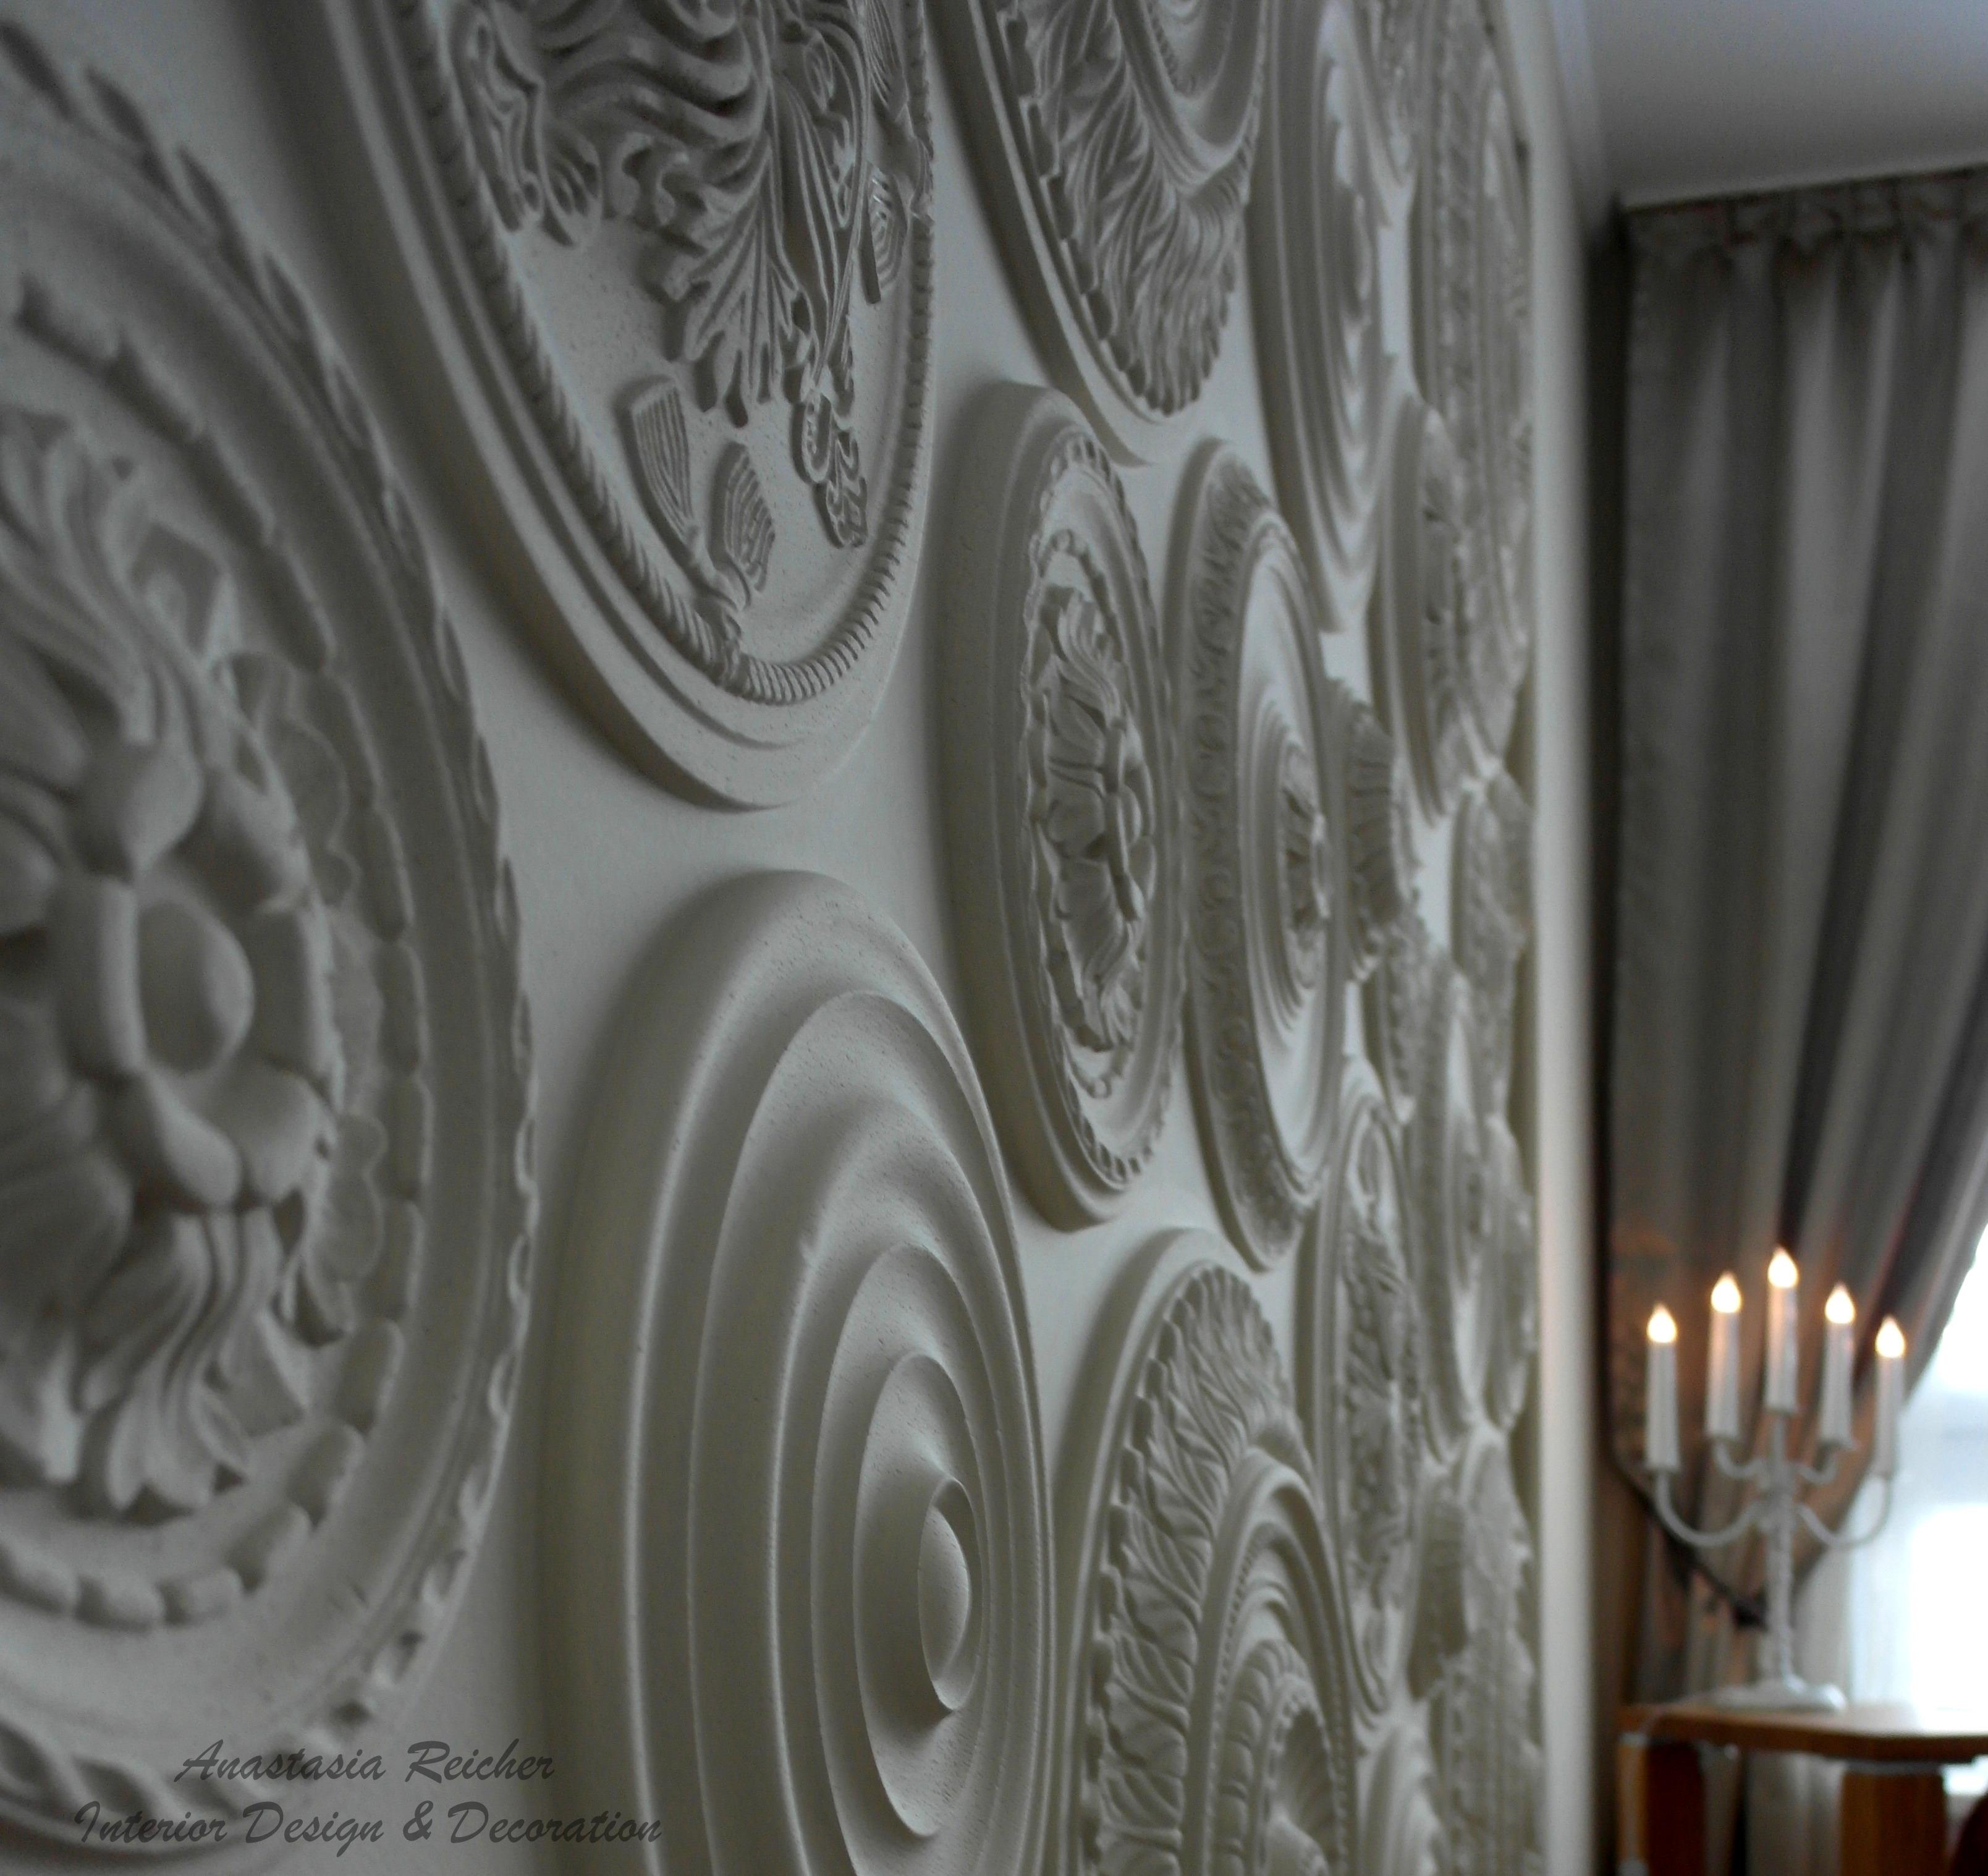 Deckenrosette als Wandgestaltung #kreativewandgestaltung ©Anastasia Reicher Interior Design